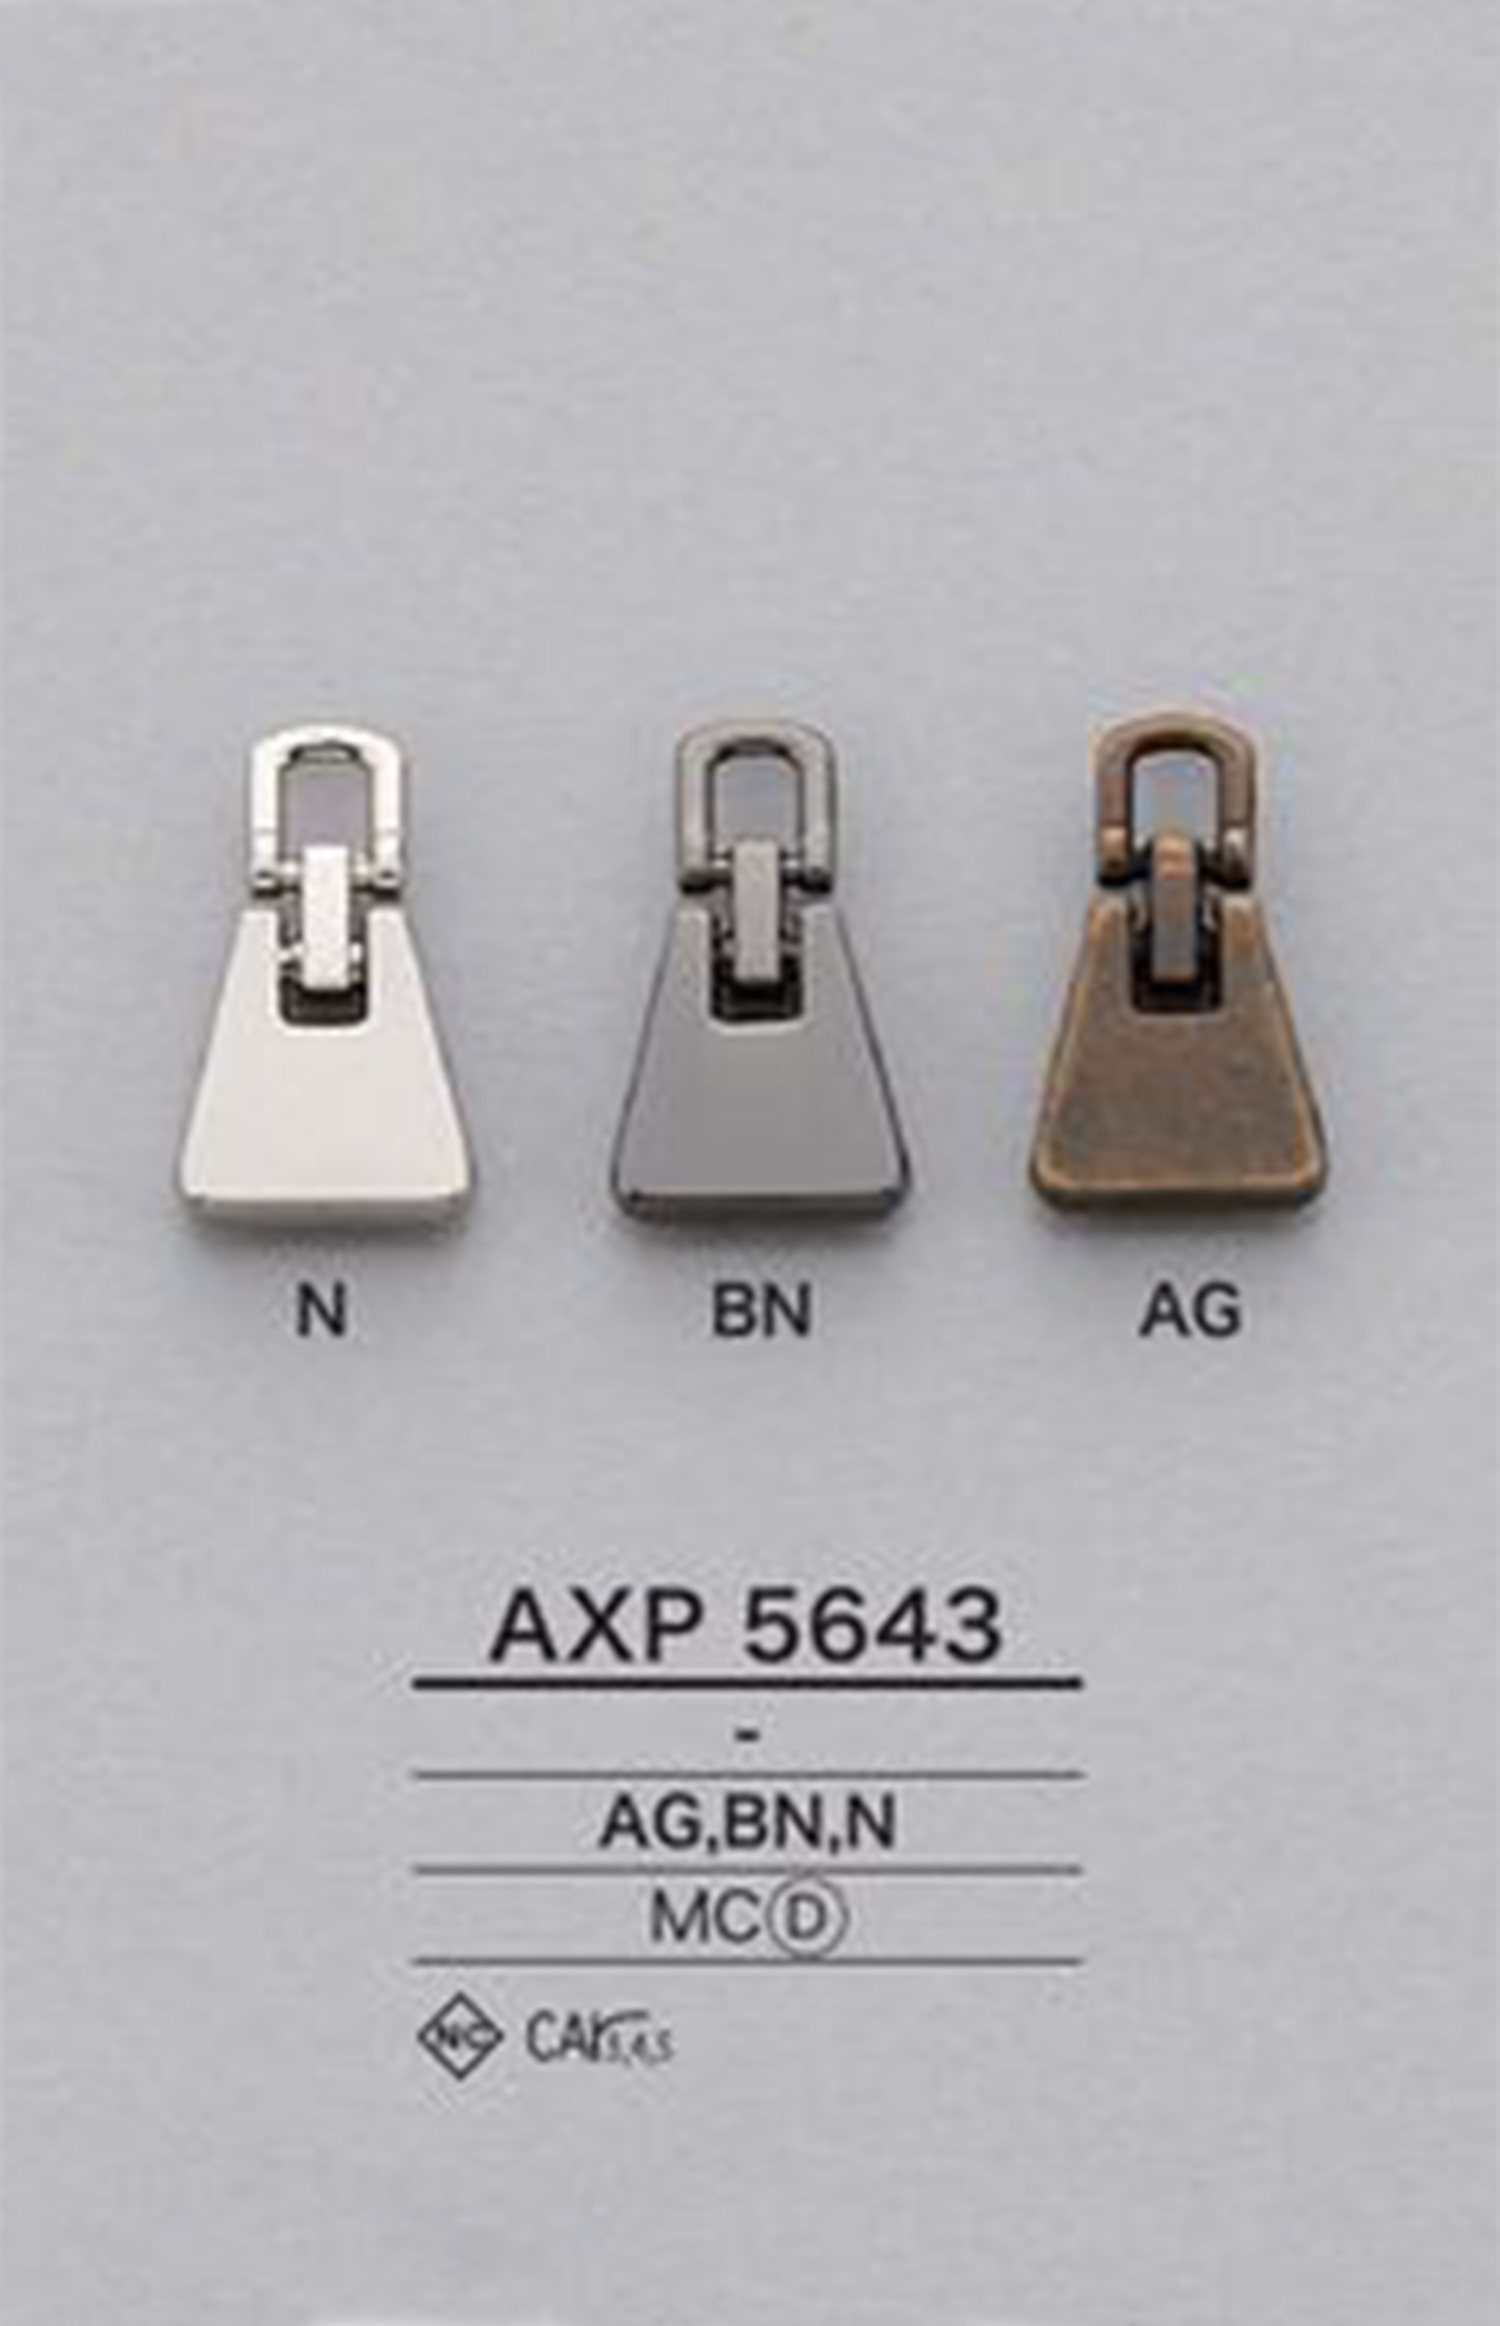 AXP5643 지퍼 포인트(지퍼 슬라이더) IRIS